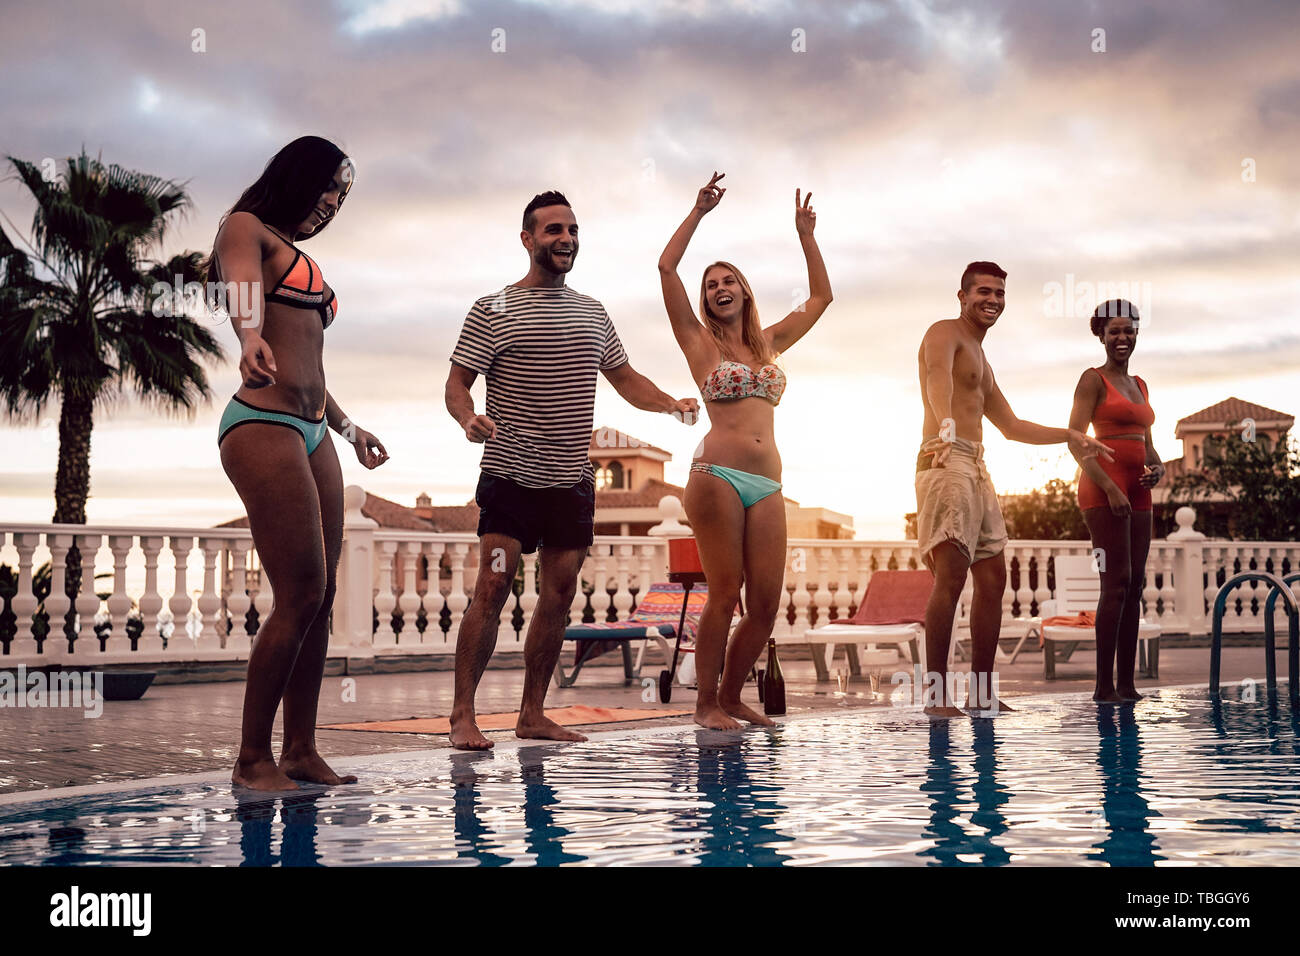 Gruppe der glücklichen Freunde tanzen am Pool Party bei Sonnenuntergang - Junge tausendjährigen Menschen Spaß in einem tropischen Luxus Resort Stockfoto